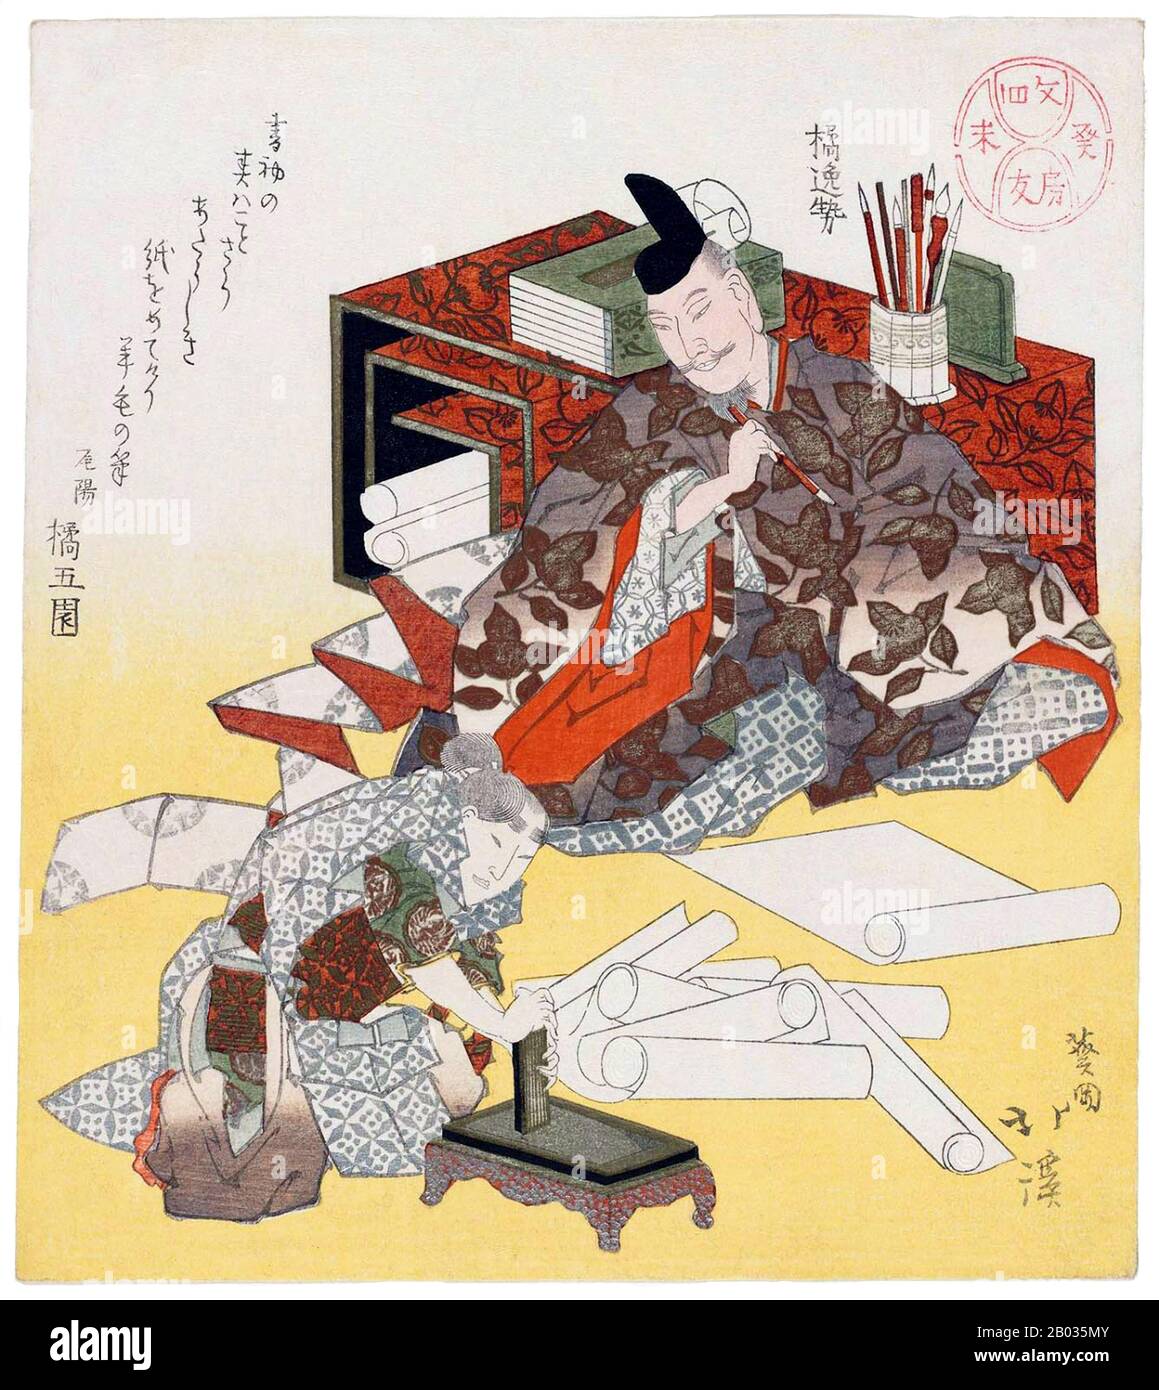 Tachibana no Hayanari (ca. 782 - 24. September 844 CE) war ein japanischer Regierungsbeamter aus heischer Zeit, Kalligraph und Mitglied der Tachibana-Familie. 804 reiste er nach China, 806 kehrte er zurück. Sein bekanntestes noch existiertestes kalligraphisches Werk ist das Ito Naishin'no Ganmon, das sich heute in der kaiserlichen Household Collection befindet. Er wird als einer der drei herausragenden Kalligraphen namens Sanpitsu ("Drei Pinsel") geehrt. Er wird posthum als Kami im Kami Goryo Shrine Kyoto geehrt. Totoya Hokkei war ein japanischer Druckerei-Zeichner und Buchillustrator. Er studierte zunächst Malerei bei Kano Yesen (173 Stockfoto